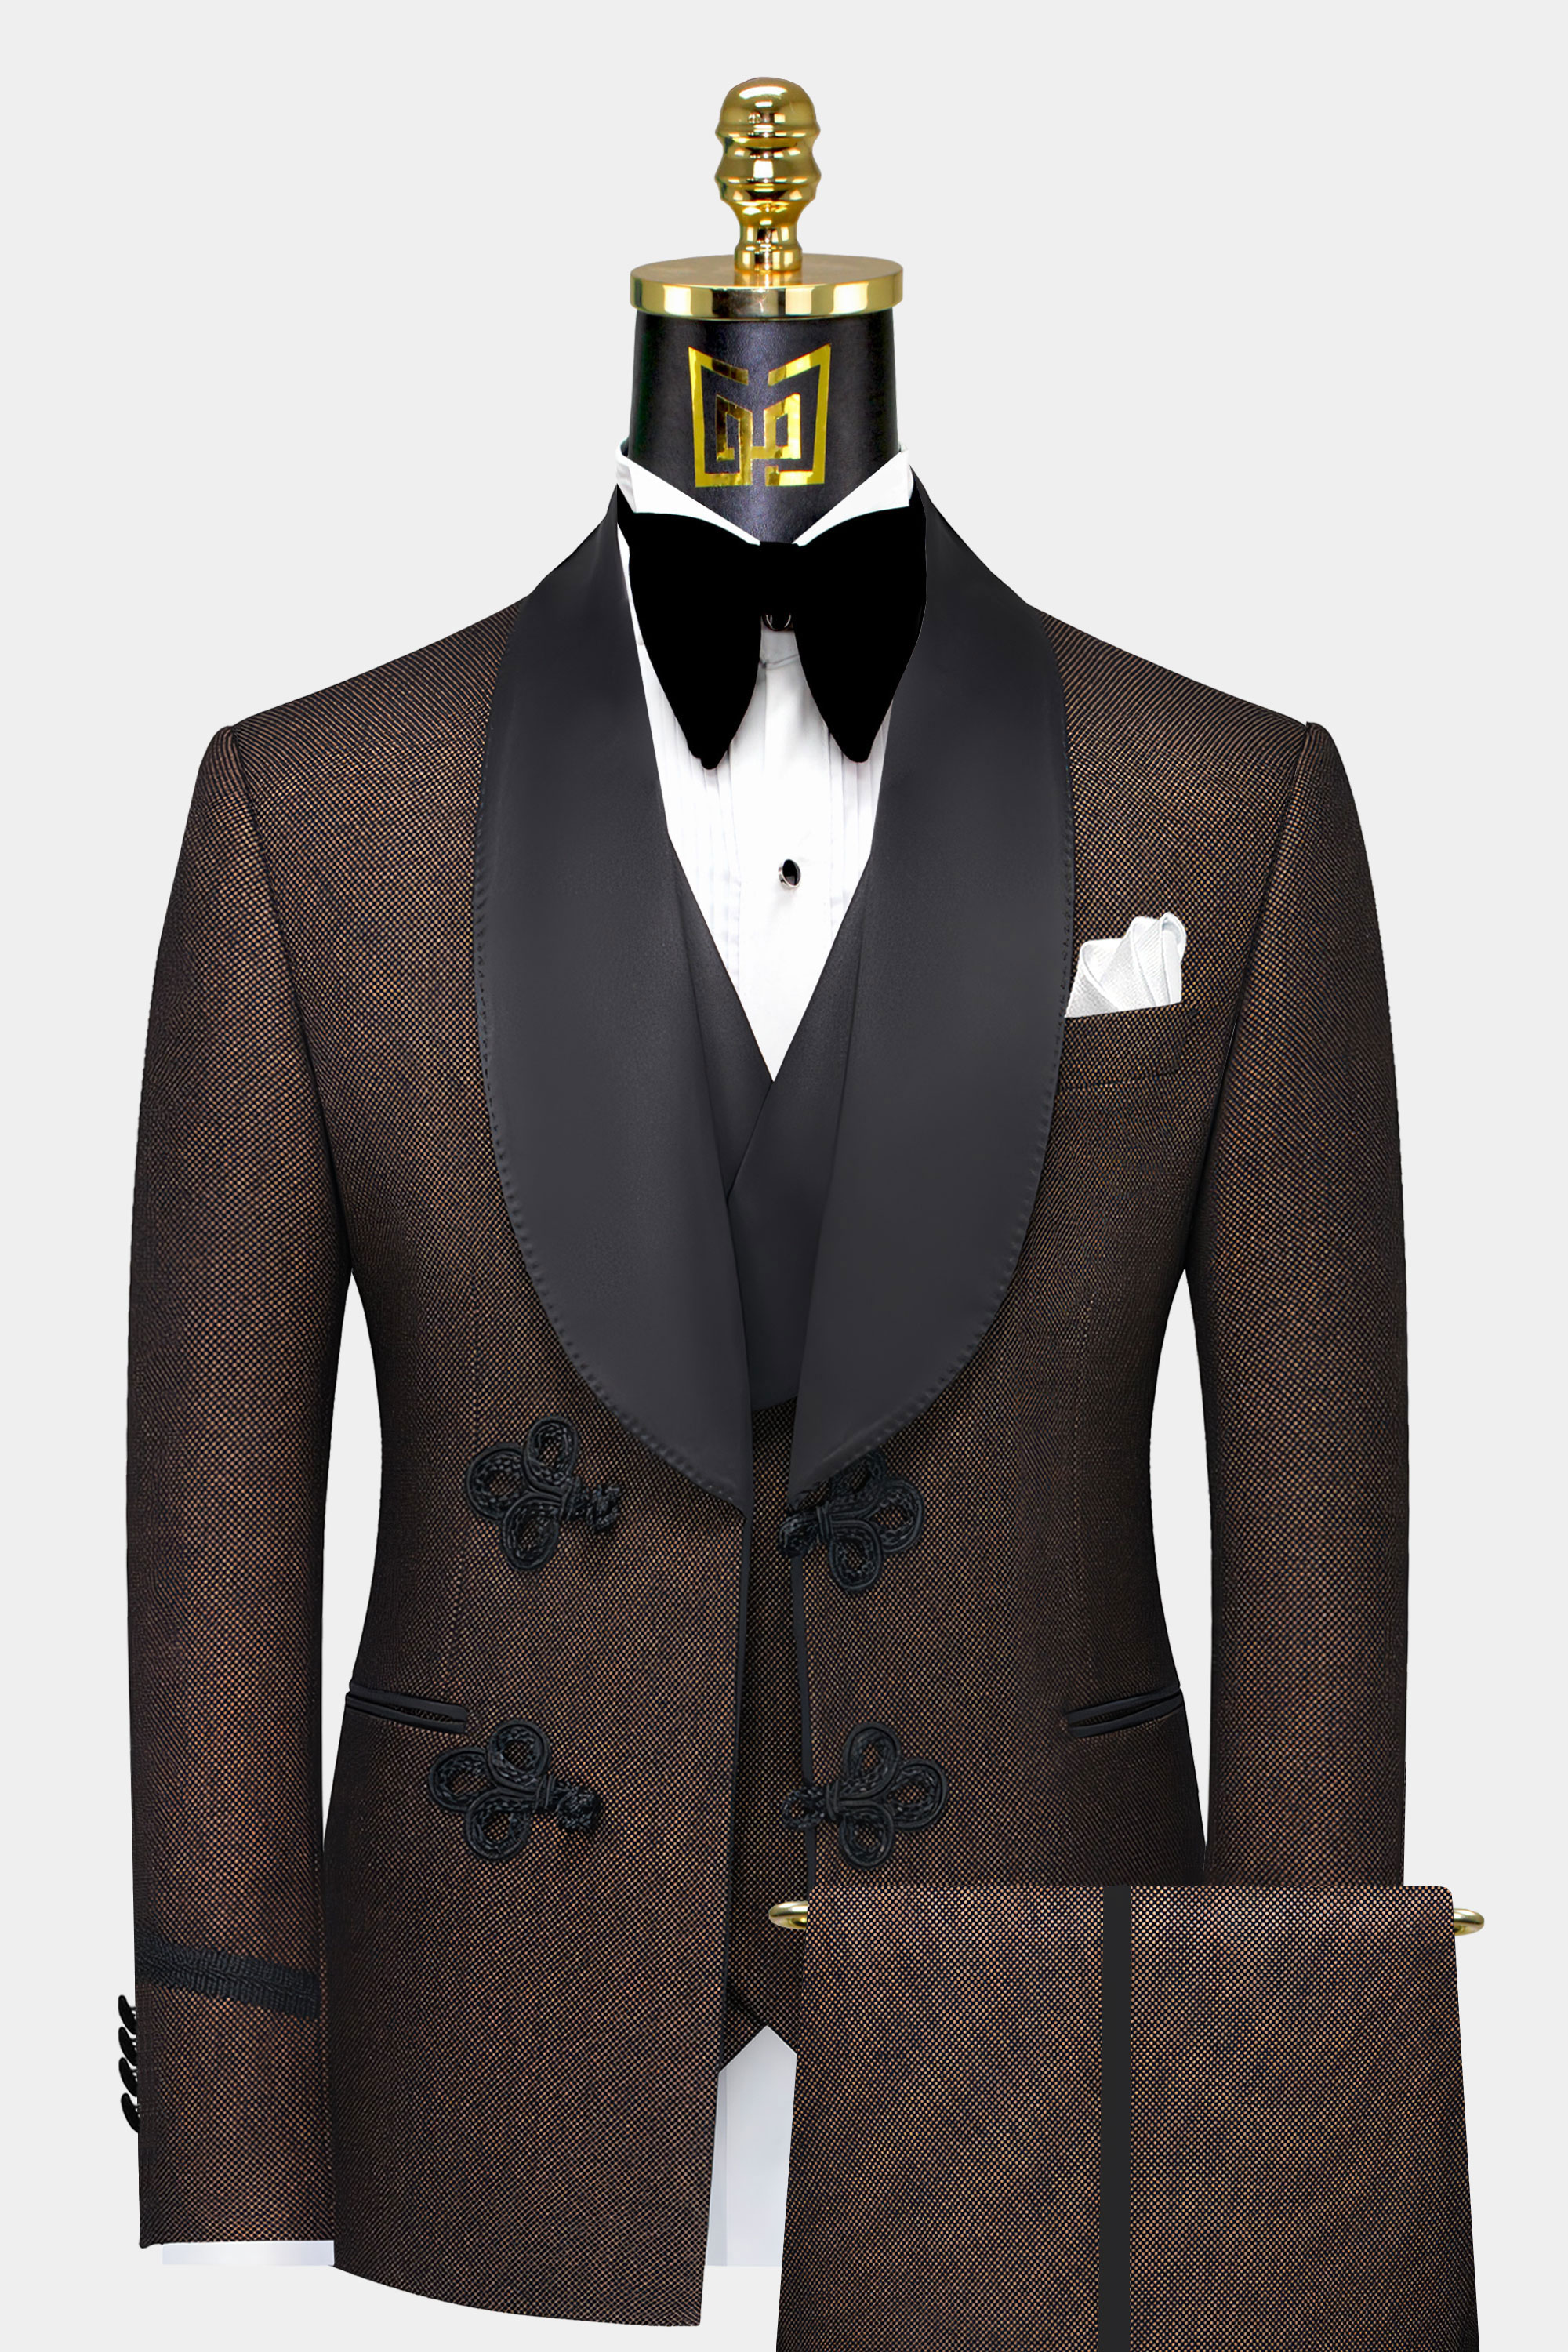 Mens-Dark-Brown-Tuxedo-Groom-Wedding-Suit-For-Prom-from-Gentlemansguru.com